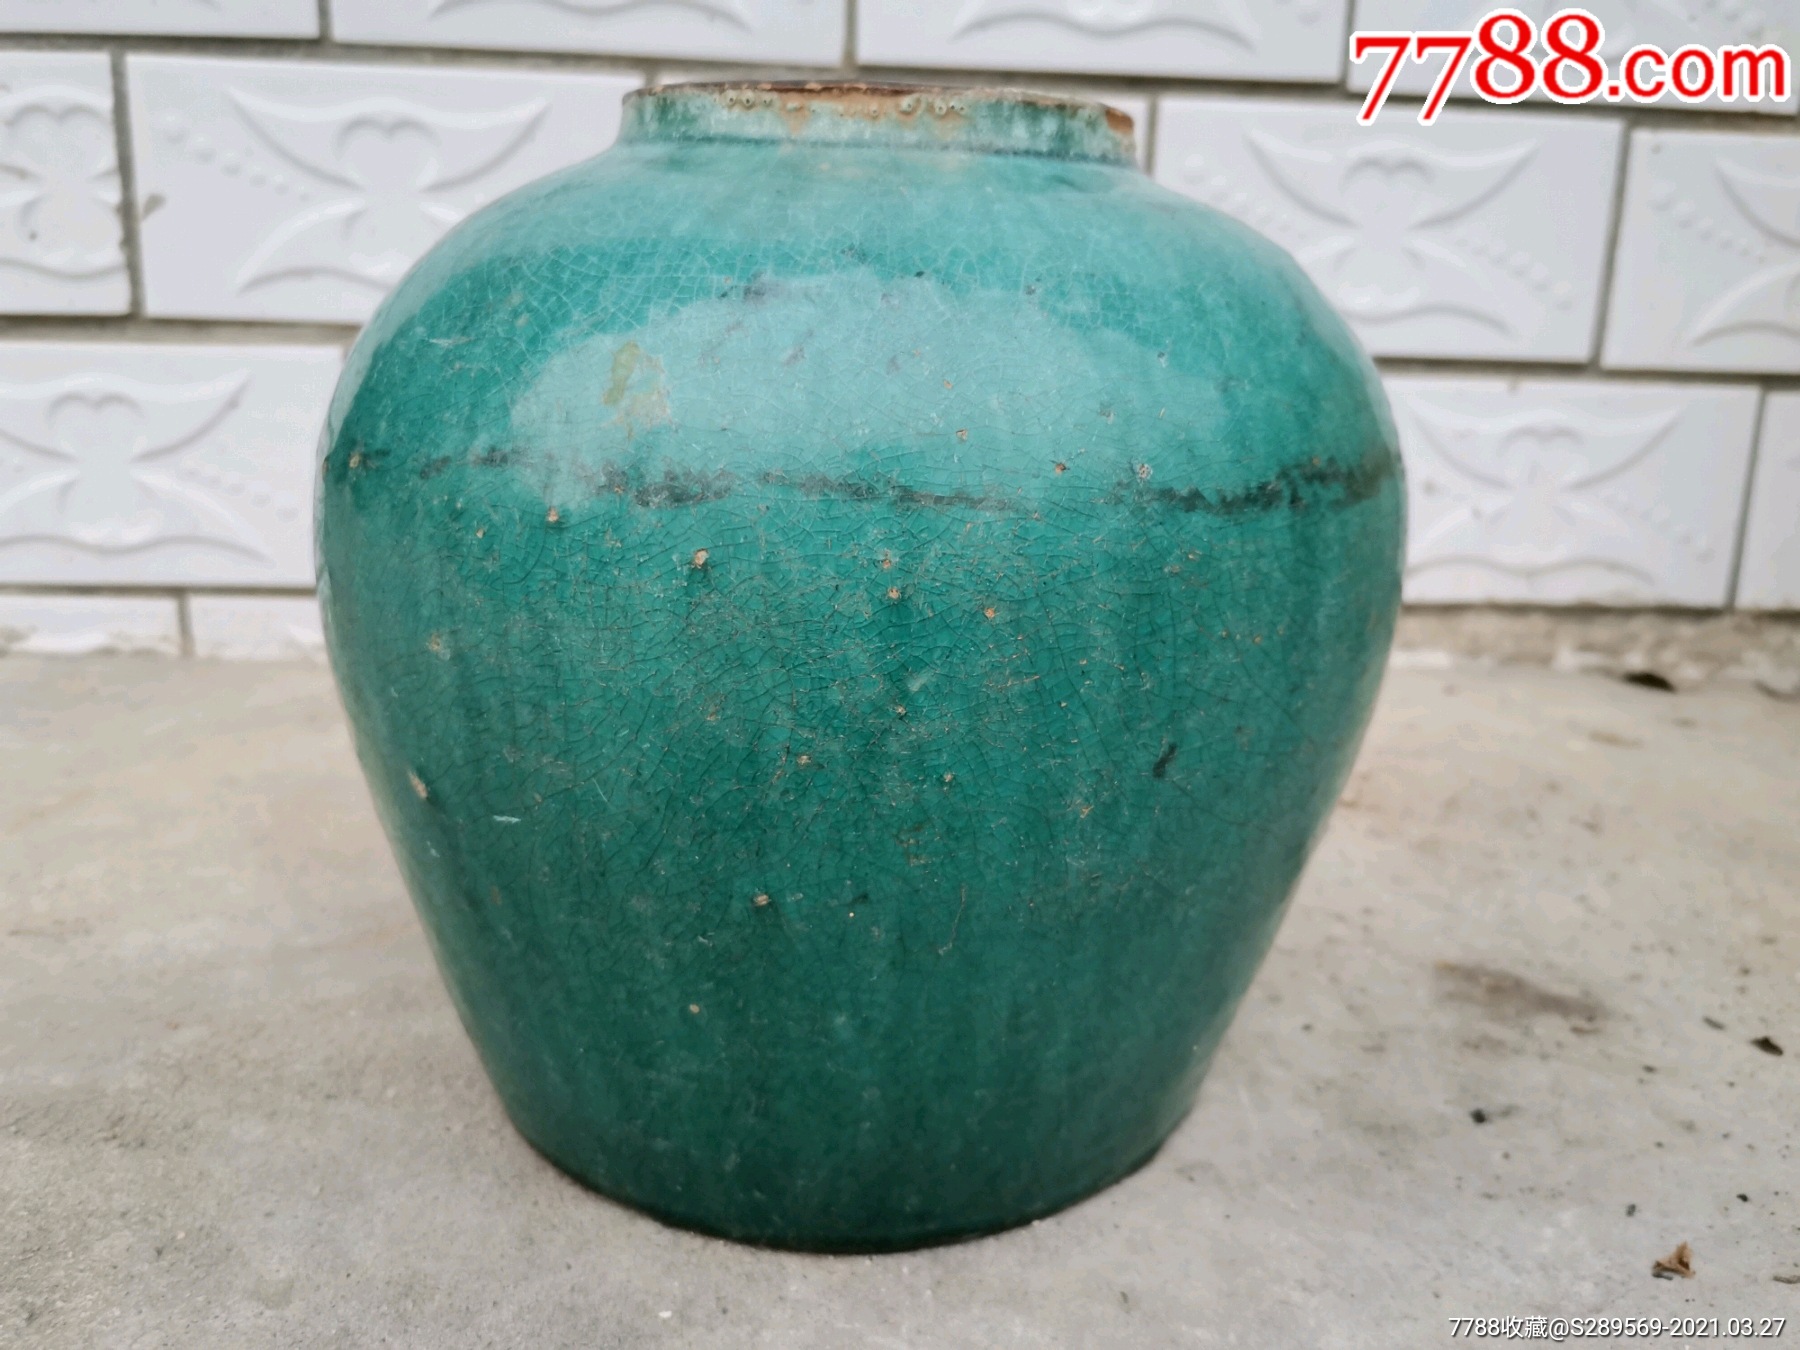 简介: 长沙窑绿釉罐,长沙窑历为著名窑口,绿釉为长沙窑清代